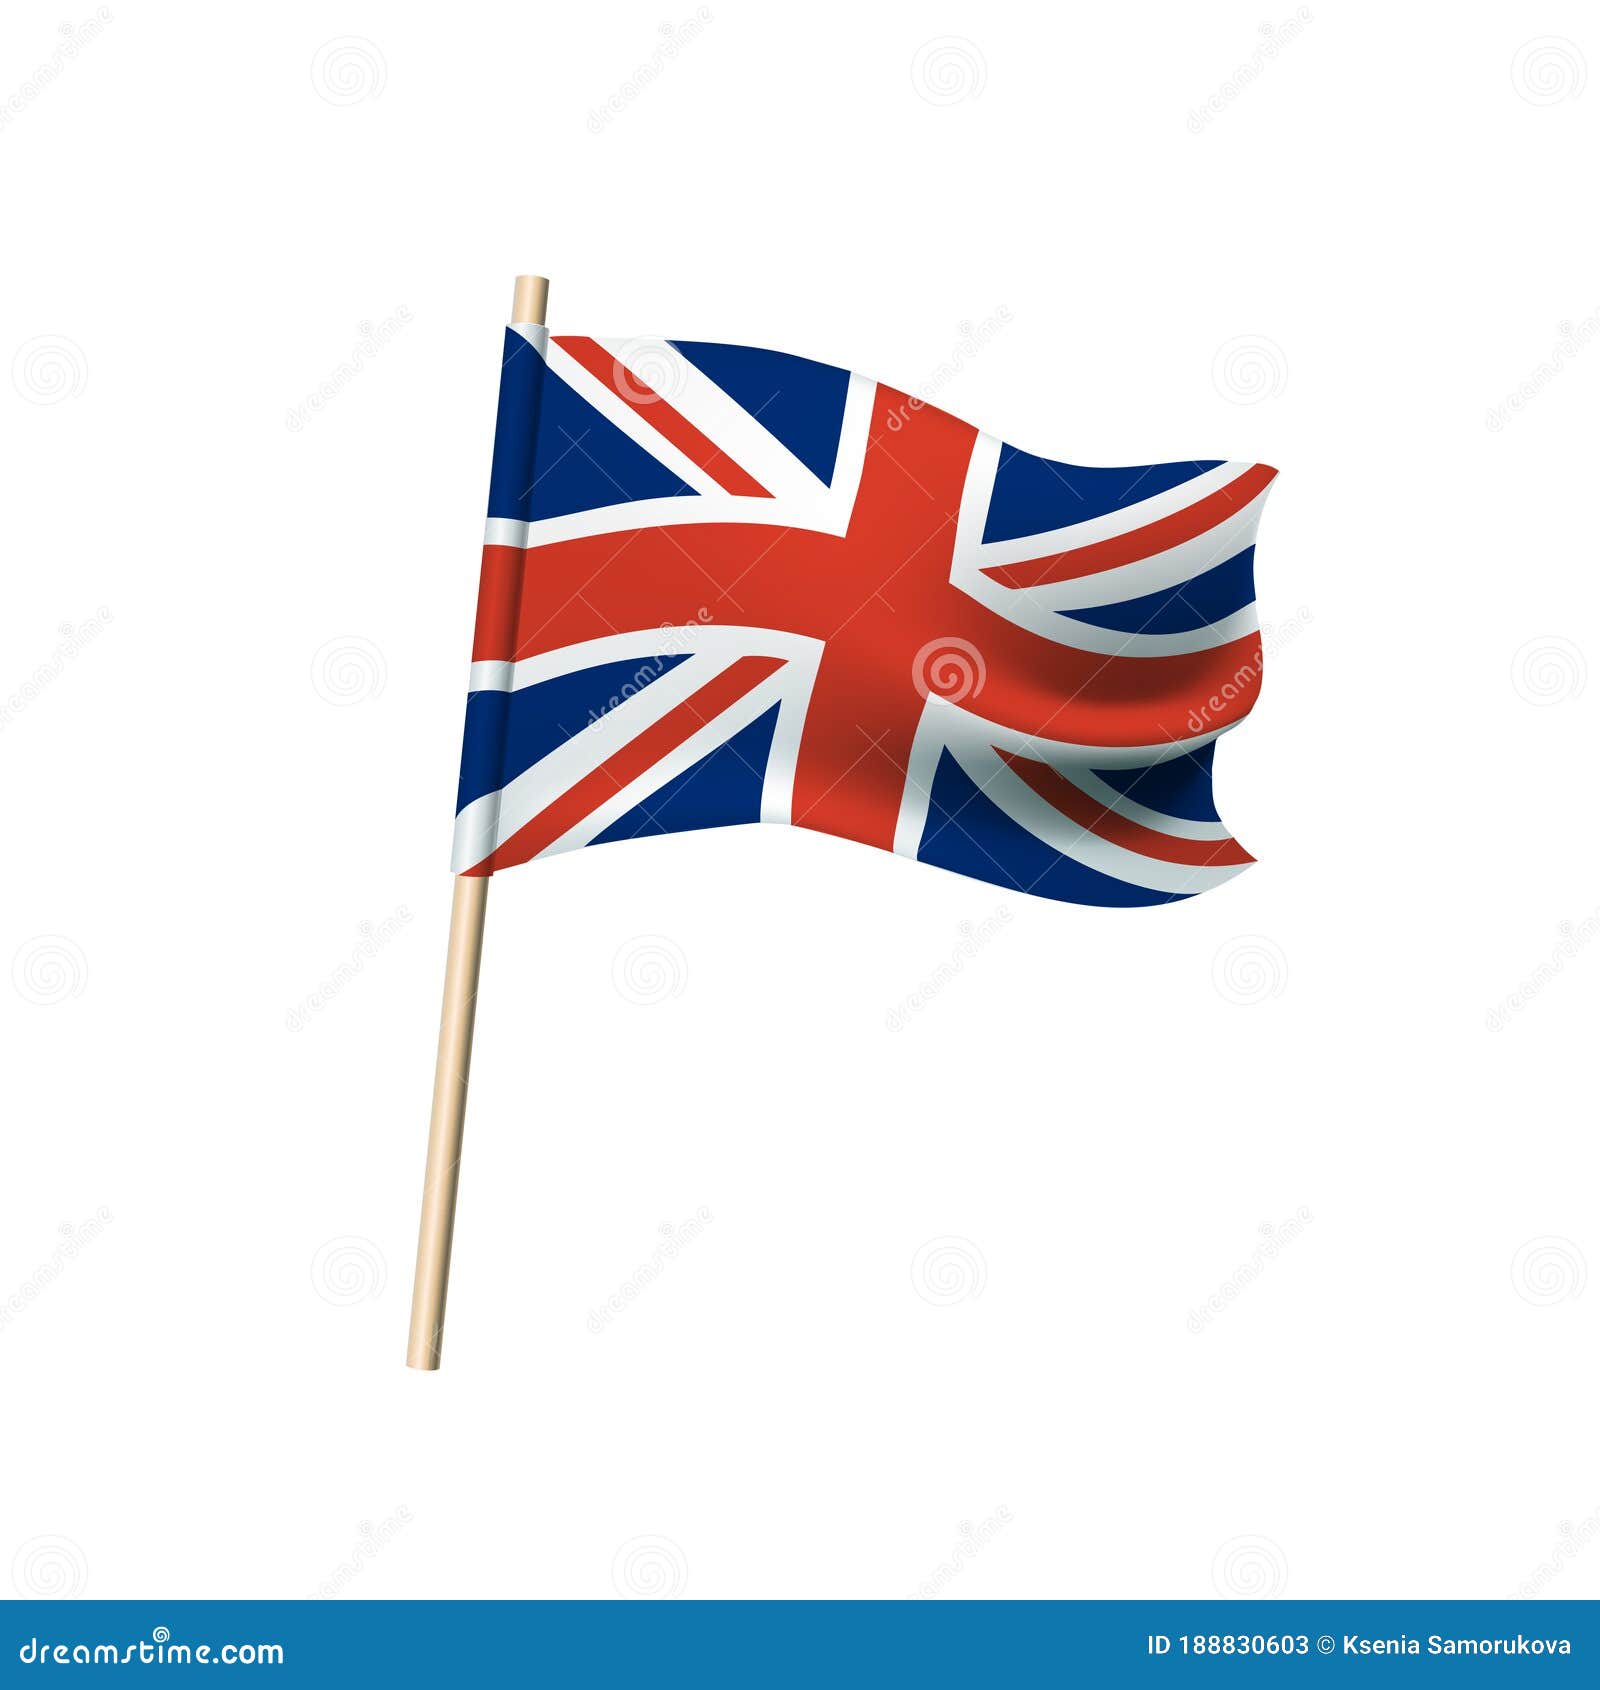 Cờ Anh được xem là biểu tượng đặc trưng của đất nước Anh, Scotland, Wales và Bắc Ireland cùng nhau. Hình ảnh trên cờ, chứa đựng sức mạnh và lịch sử lâu đời của đế chế Anh. Hãy xem hình ảnh cờ Anh để tìm hiểu về ý nghĩa của từng hình tượng trên cờ quốc gia này.